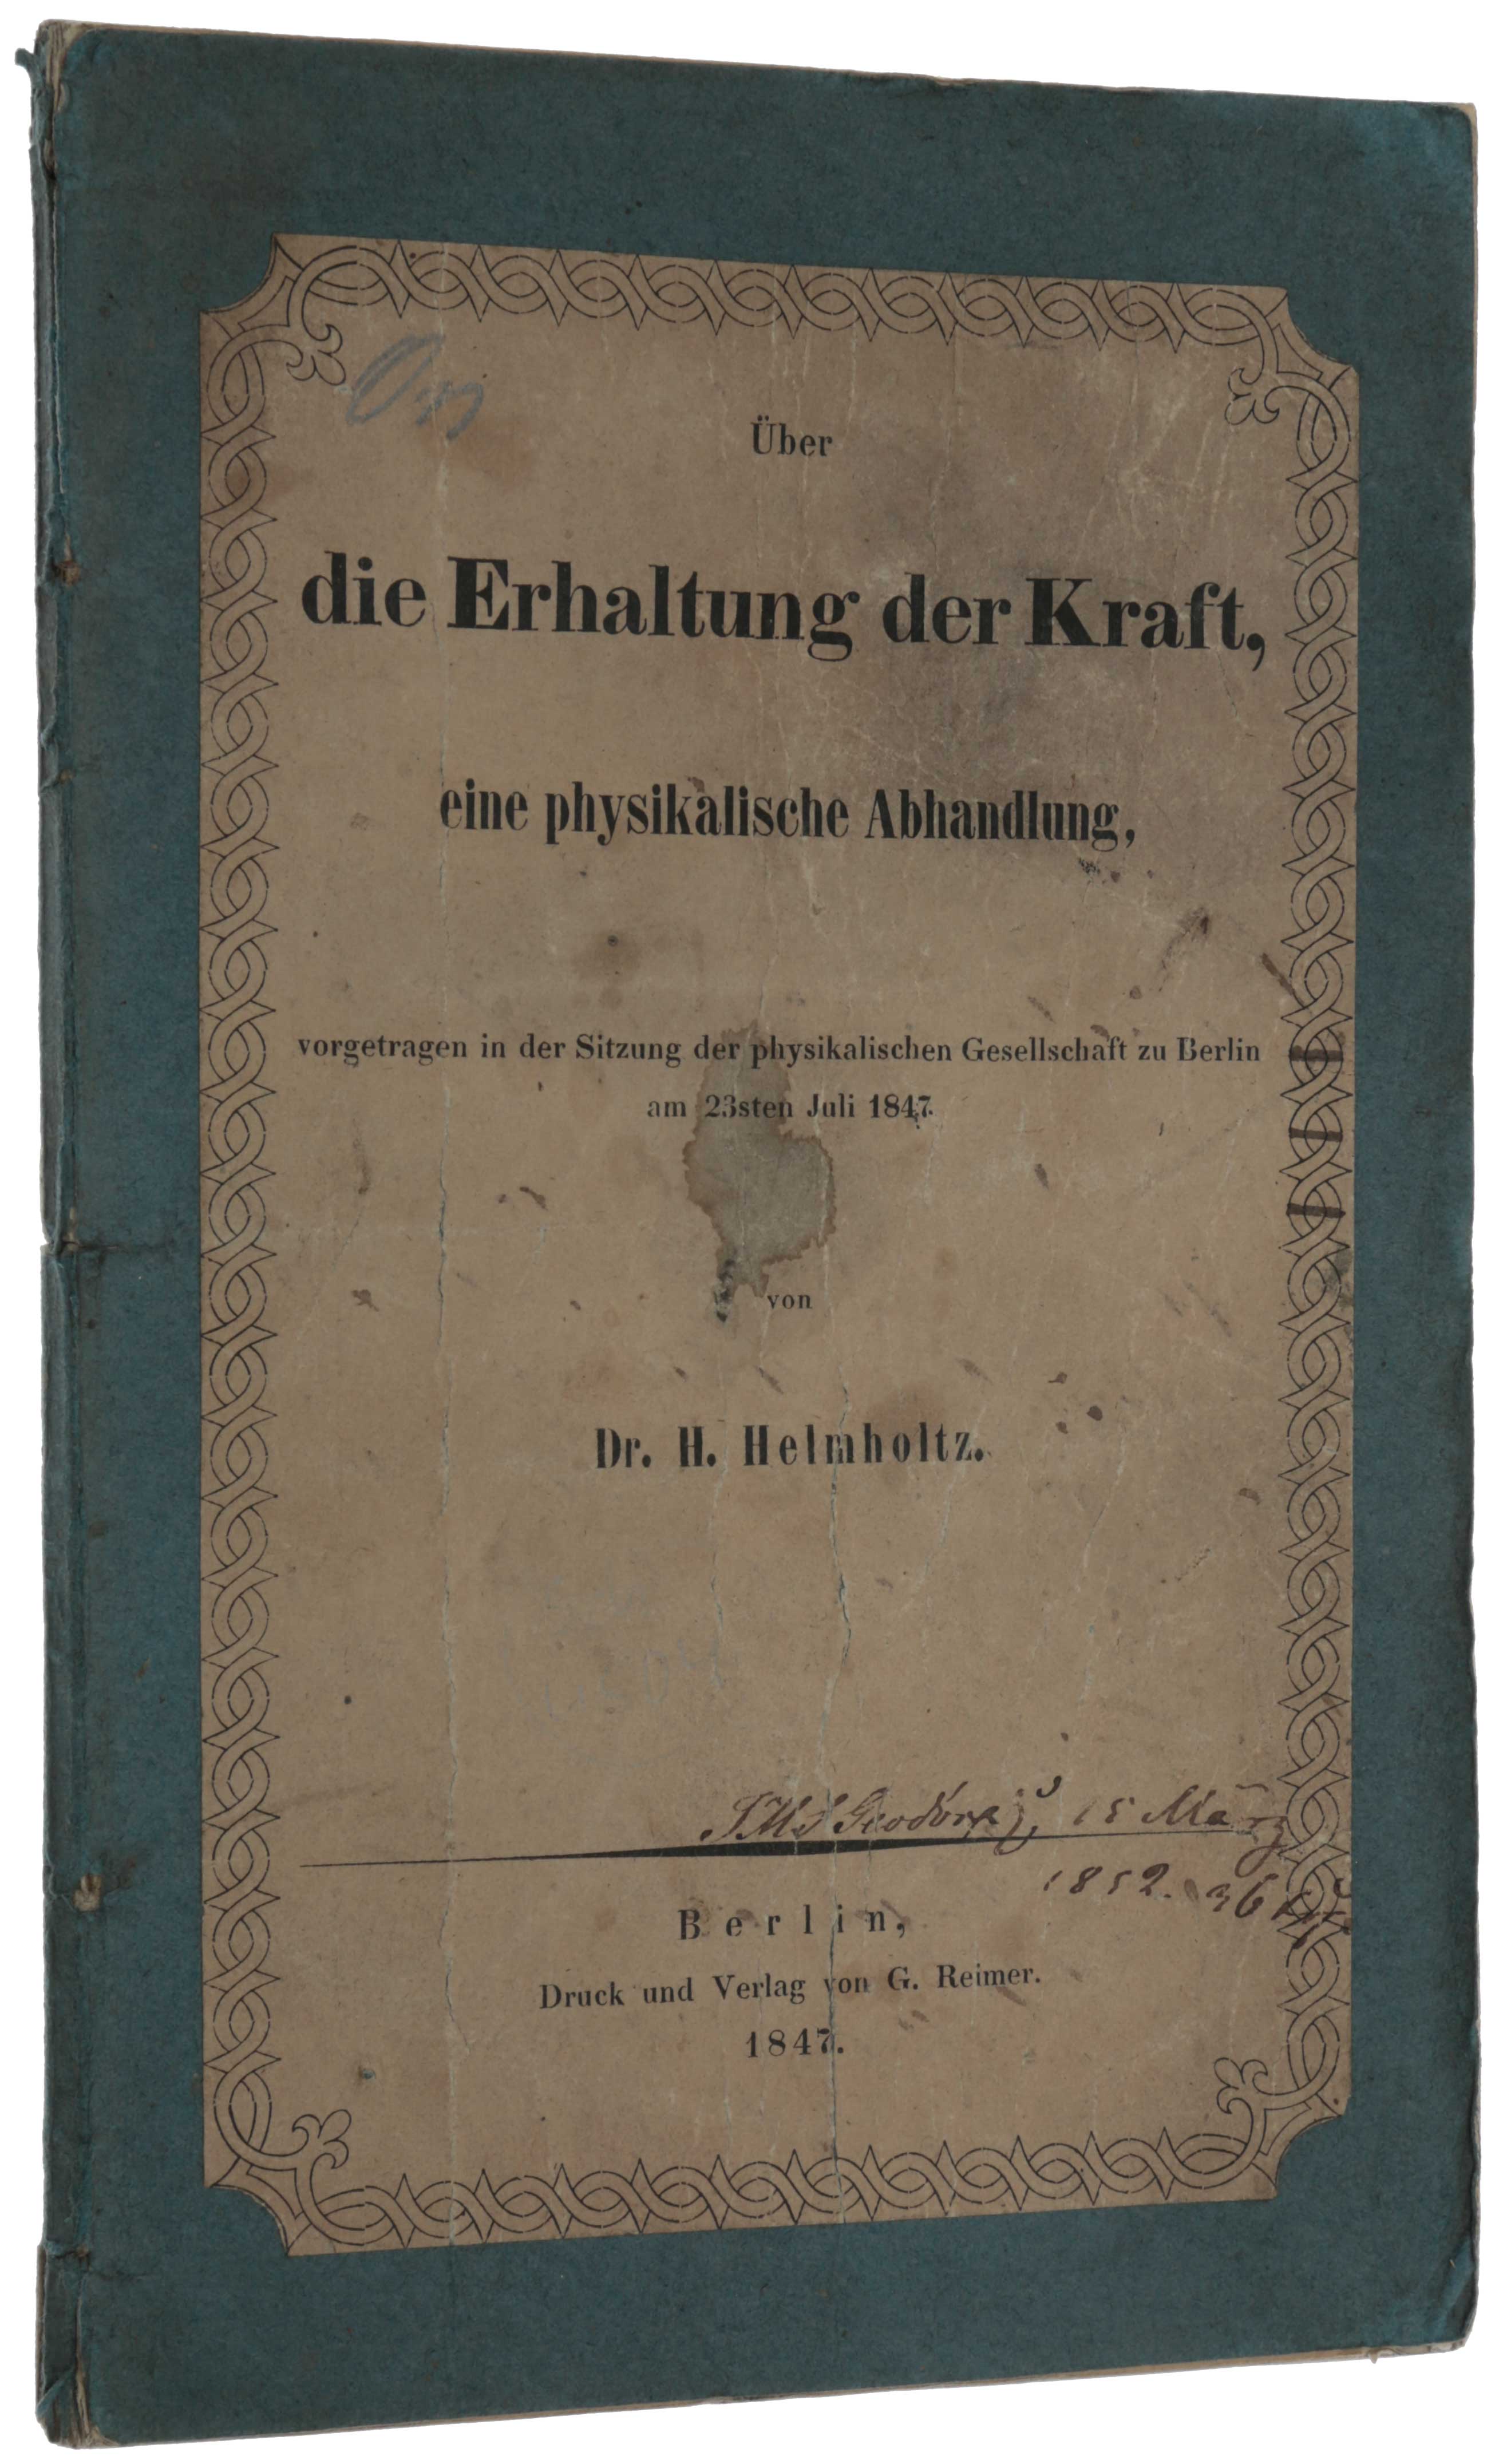 Item #4842 Über die Erhaltung der Kraft, eine physikalische Abhandlung, vorgetragen in der Sitzung der physikalischen Gesellschaft zu Berlin am 23sten Juli 1847. Hermann HELMHOLTZ.